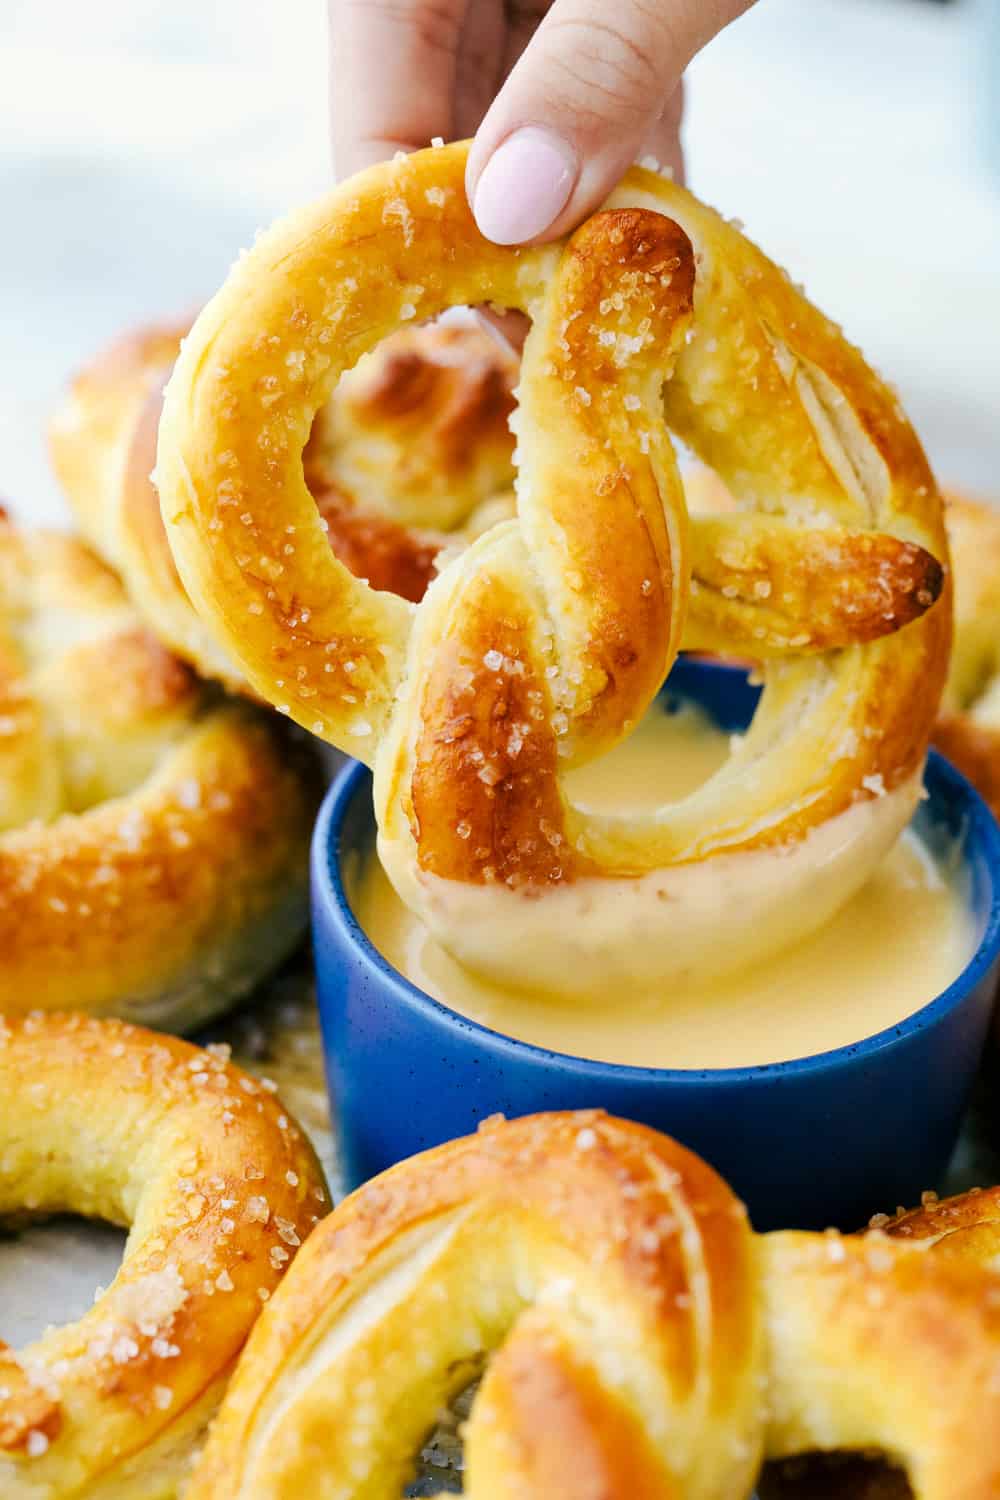 pretzels-macios-cozidos-instru-es-passo-a-passo-verissimo-bar